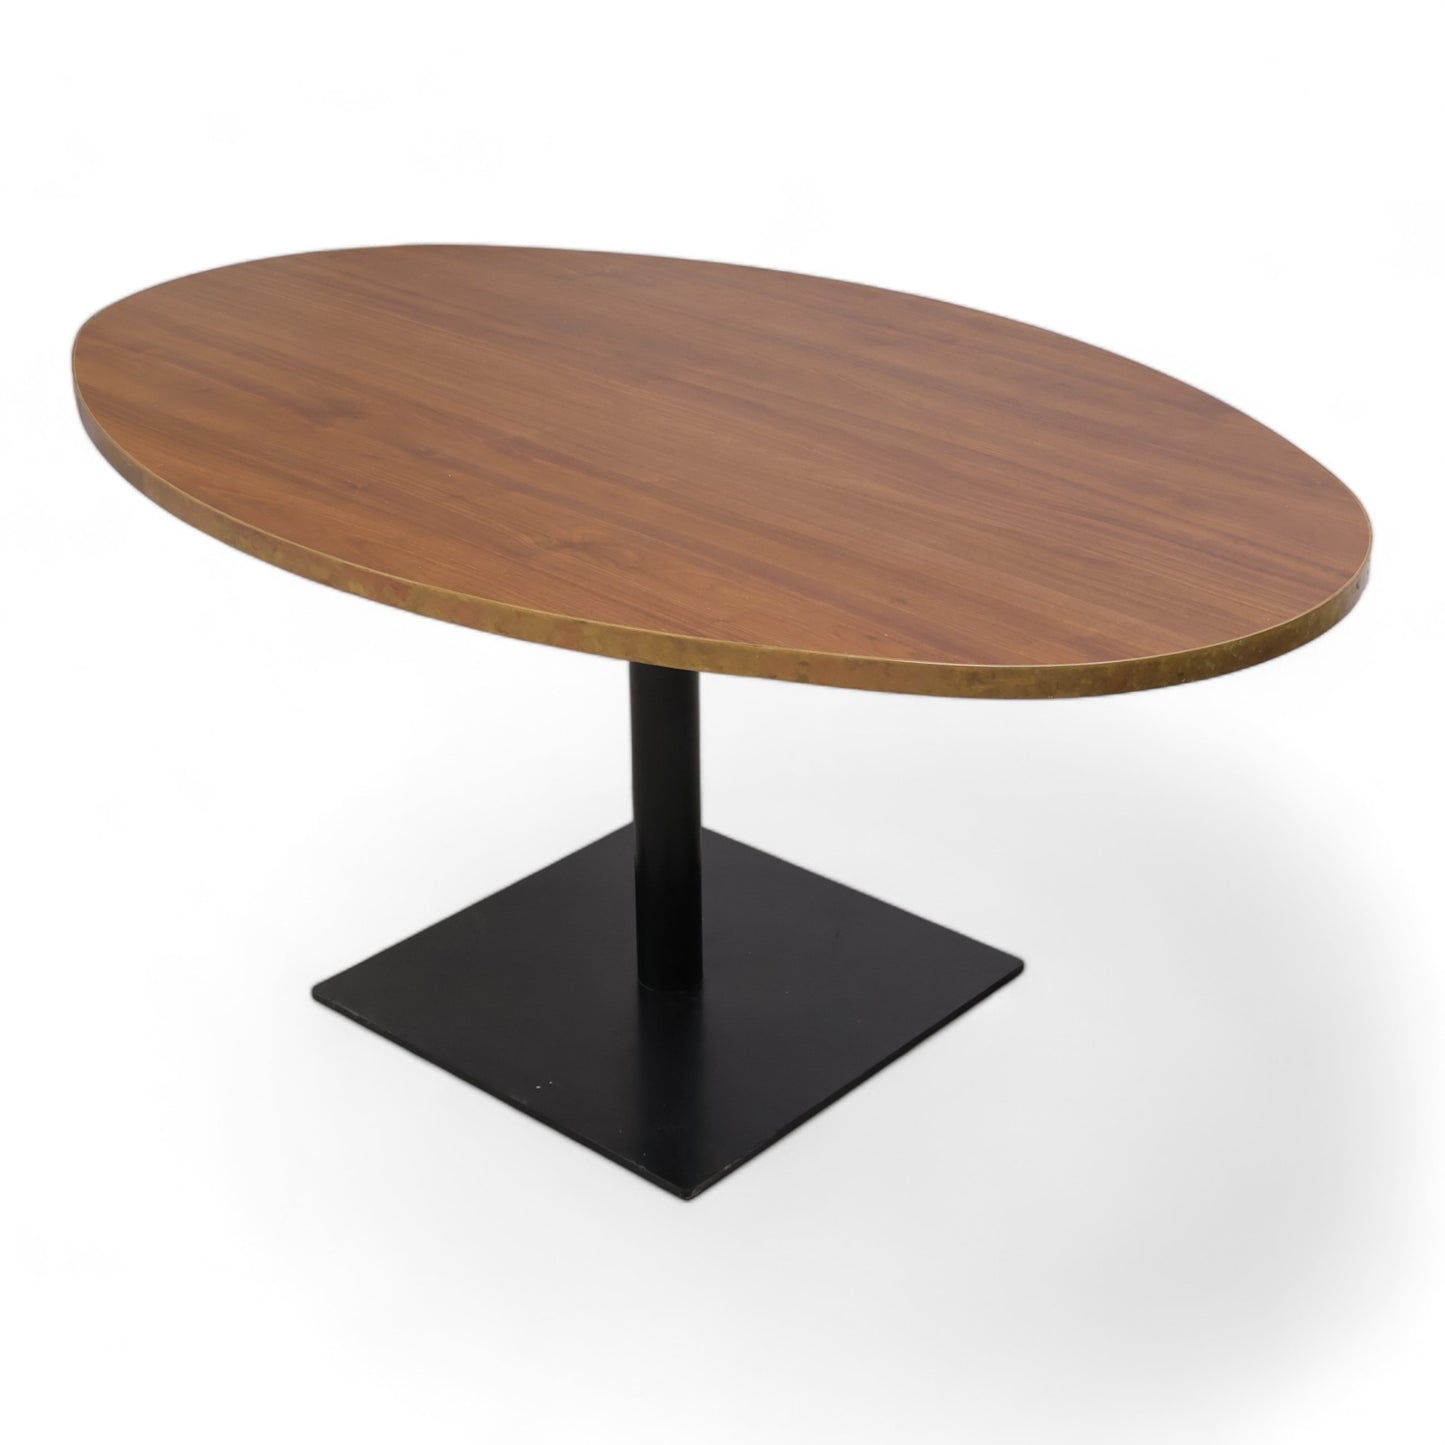 Kvalitetssikret | Robust rundt bord med brun plate og metallkant